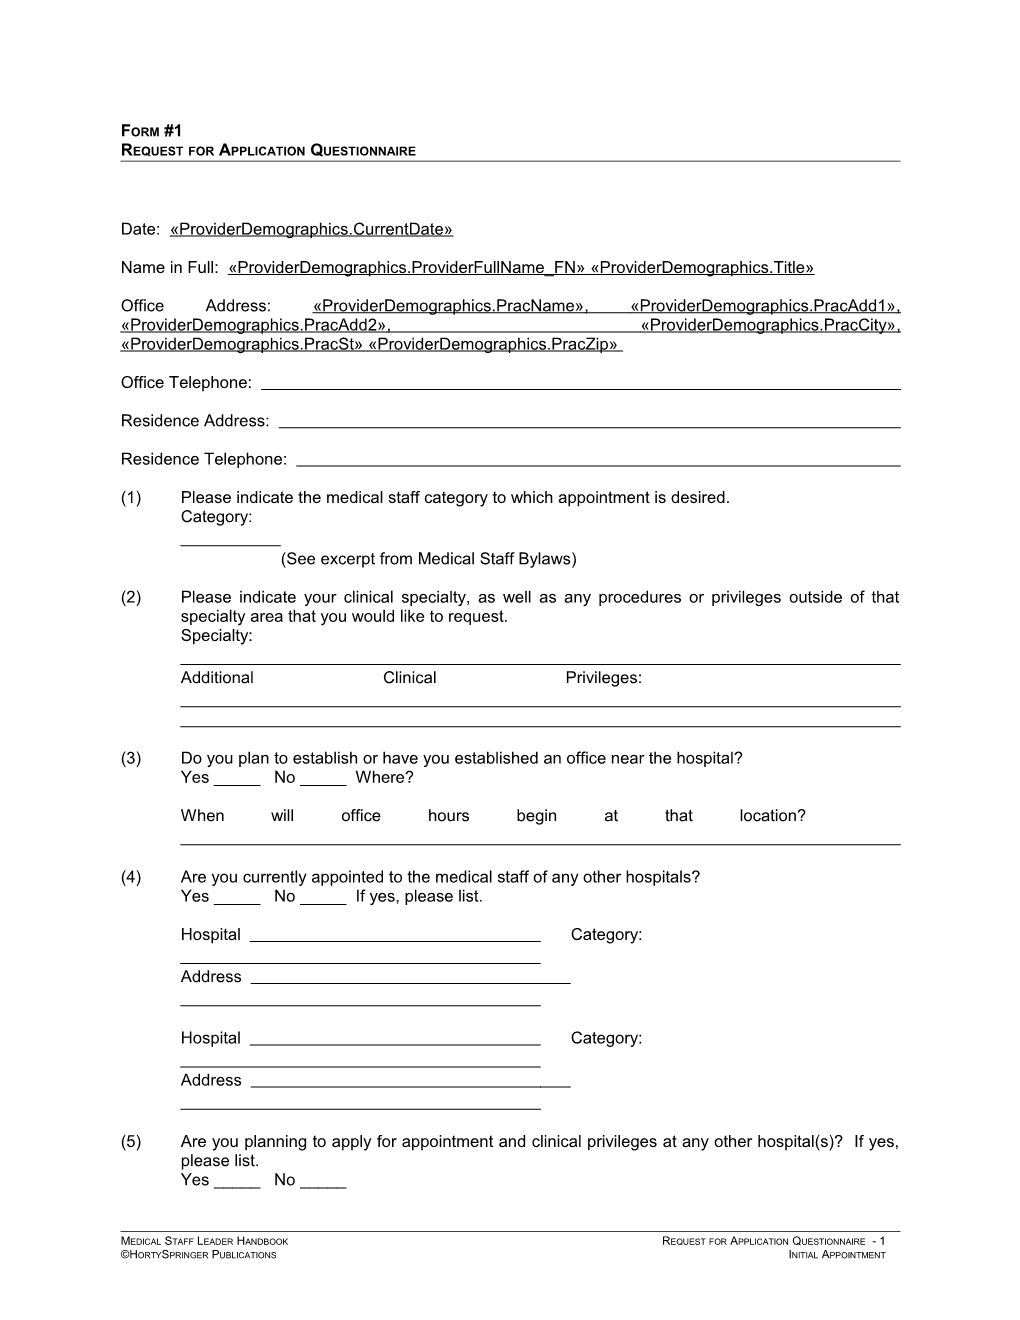 Requestfor Application Questionnaire